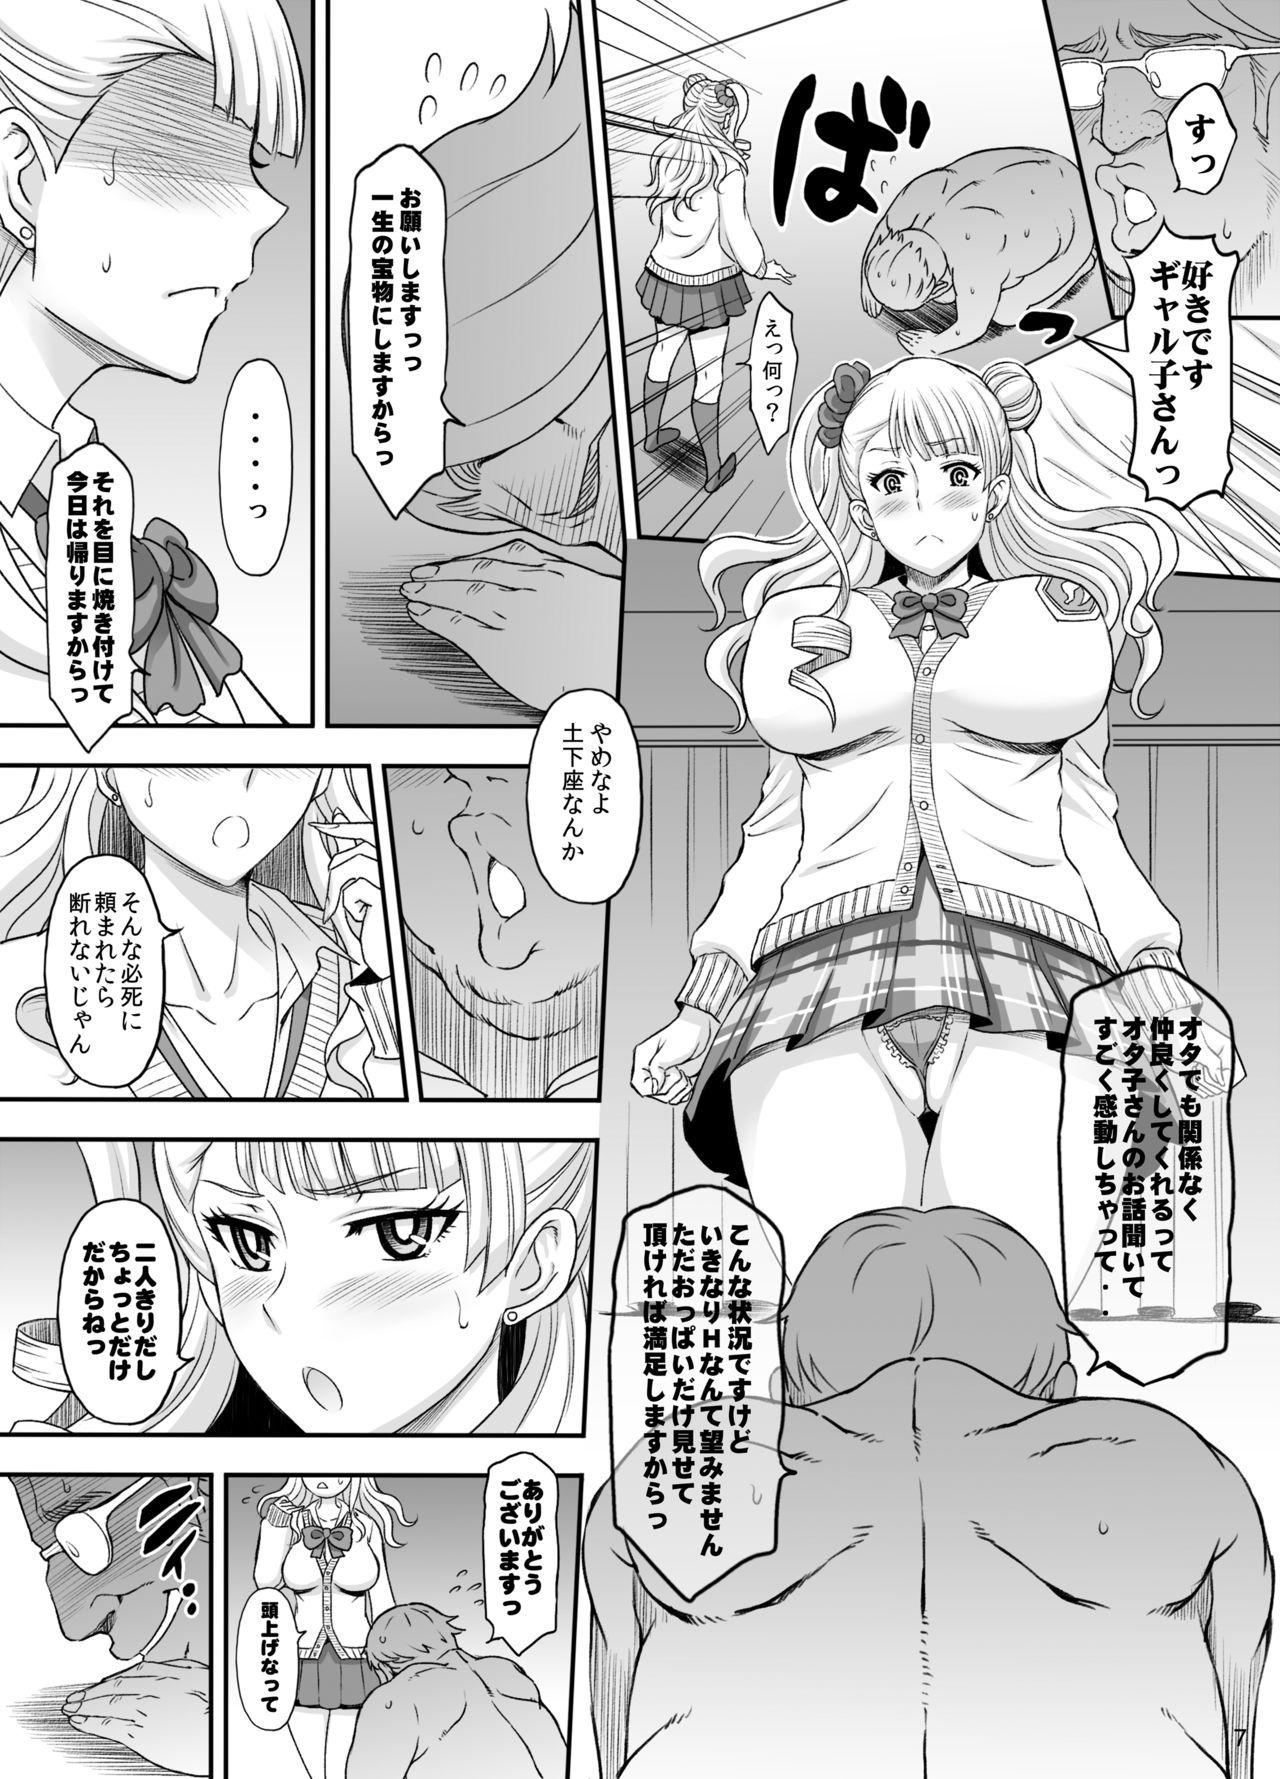 Tan ○○○ shite! Galko-chan - Oshiete galko-chan Dominate - Page 6